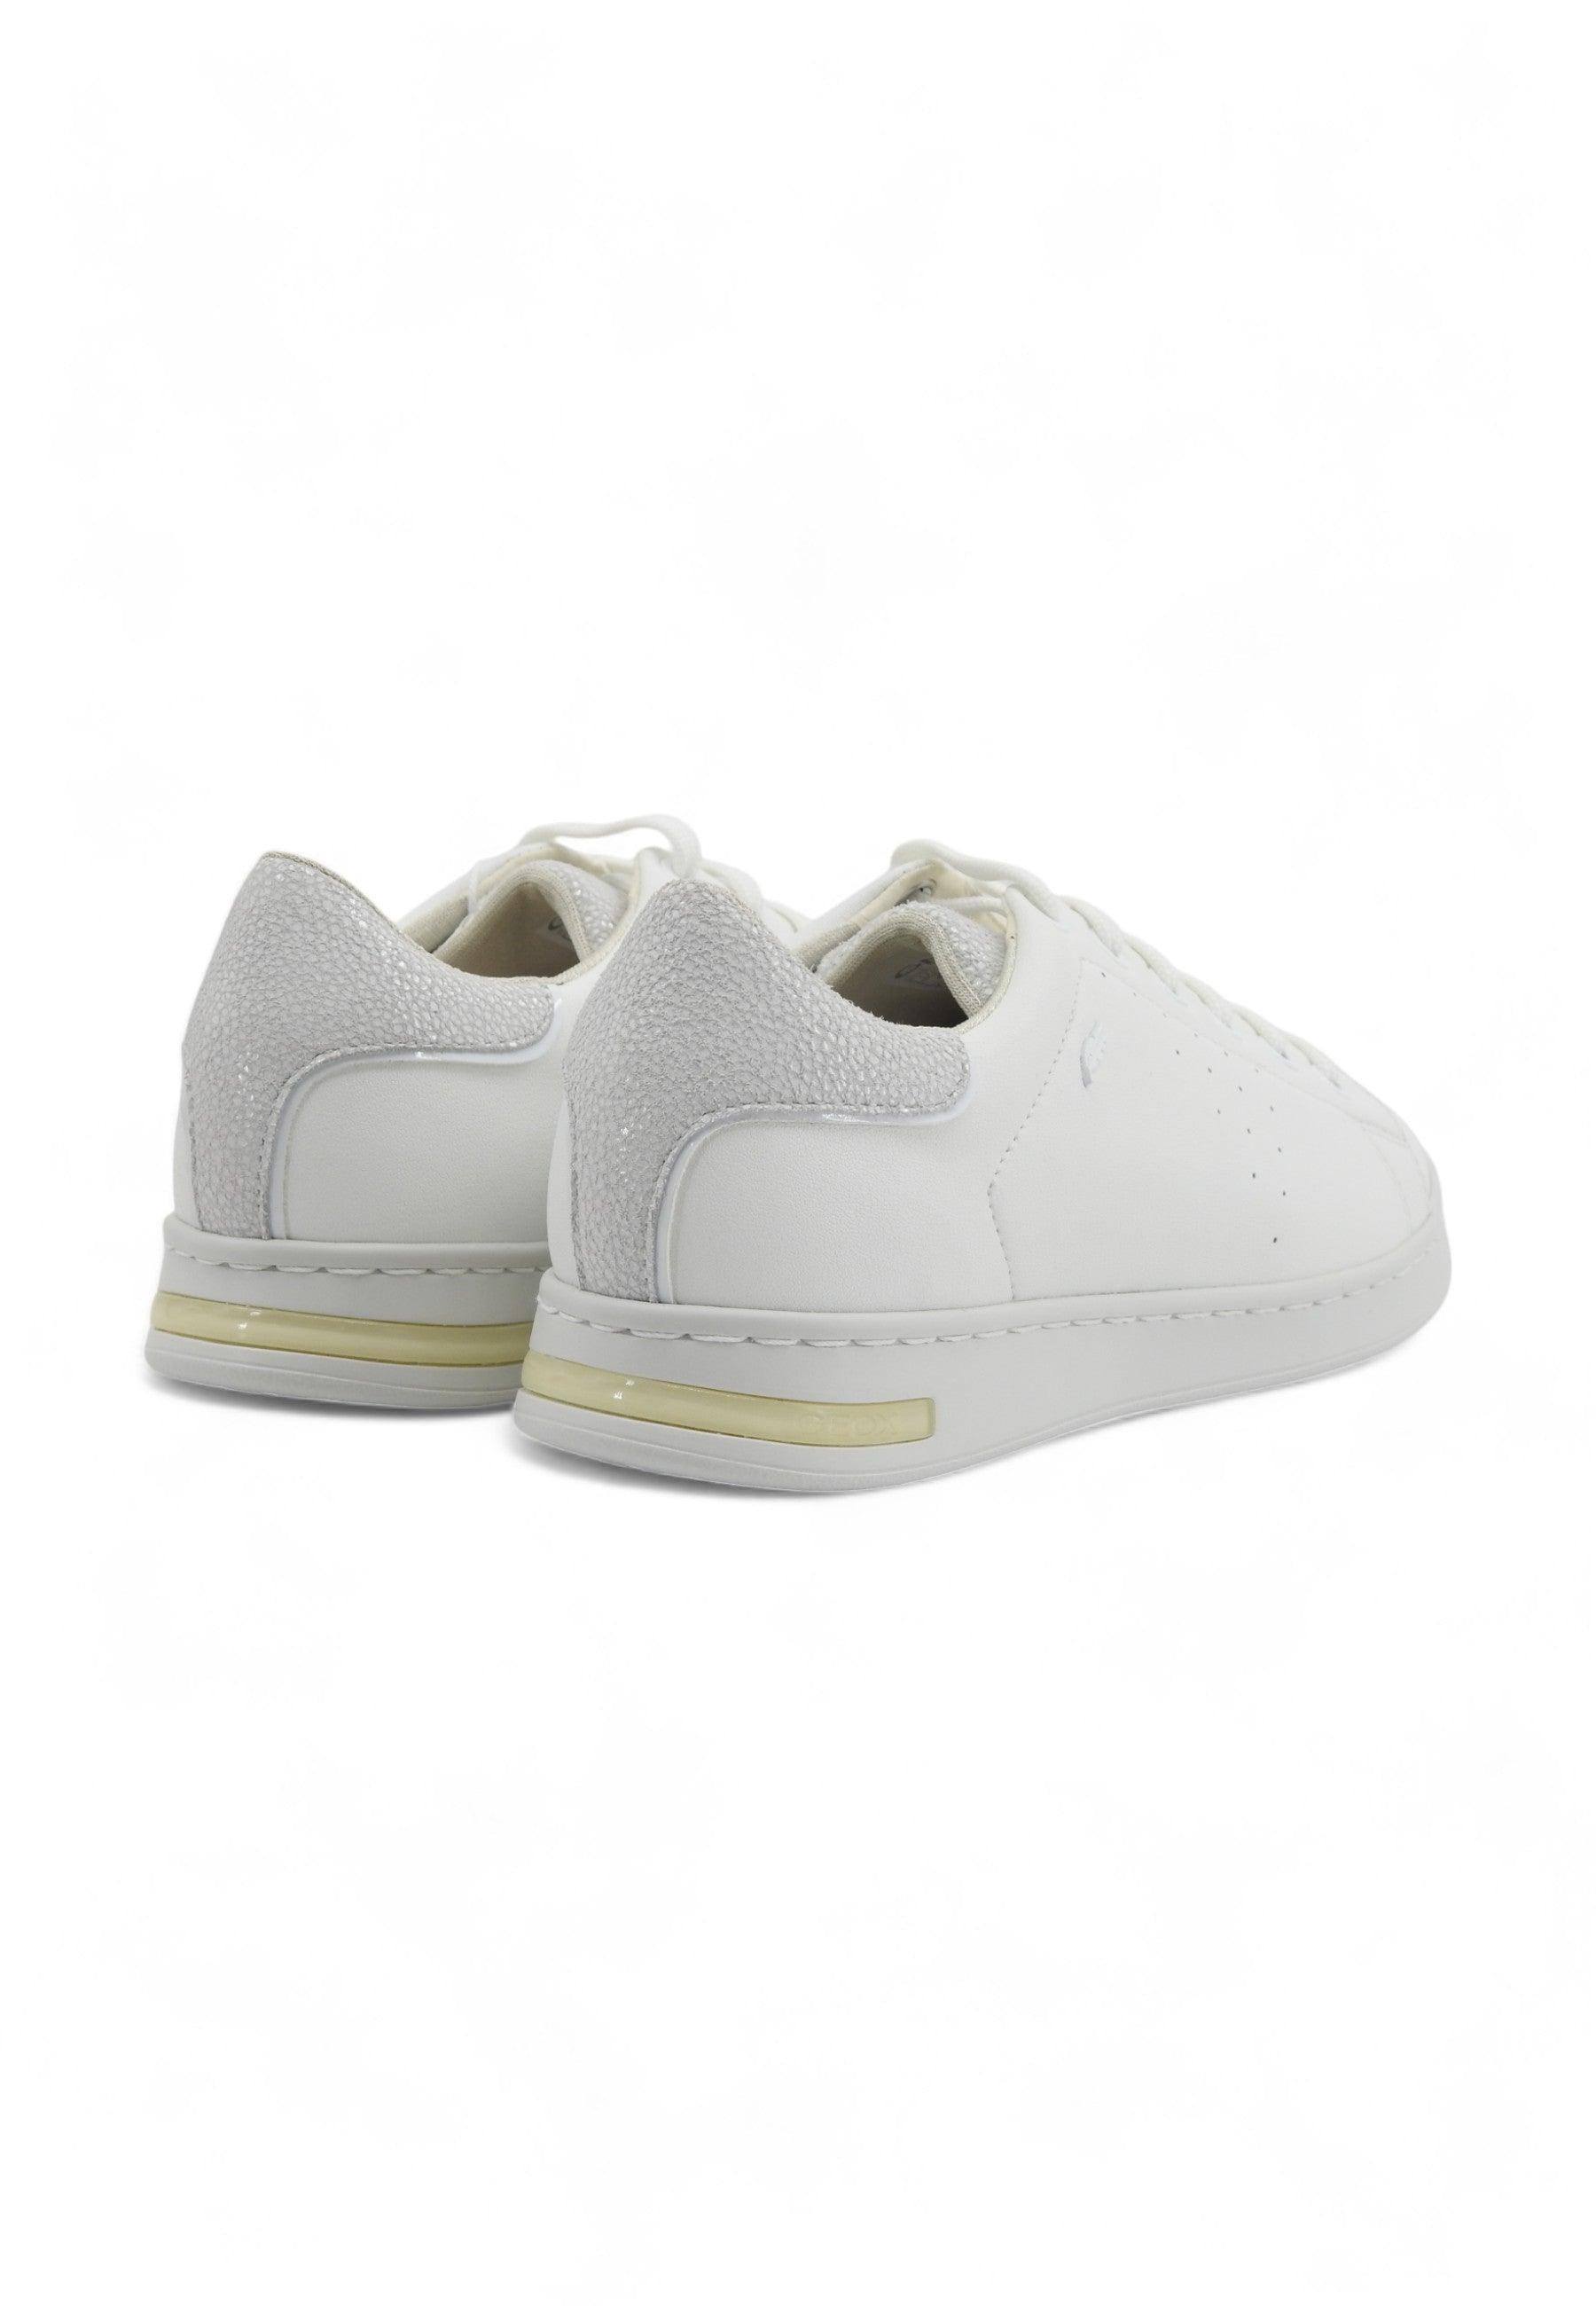 GEOX Jaysena Sneaker Donna White D621BA00085C1001 - Sandrini Calzature e Abbigliamento